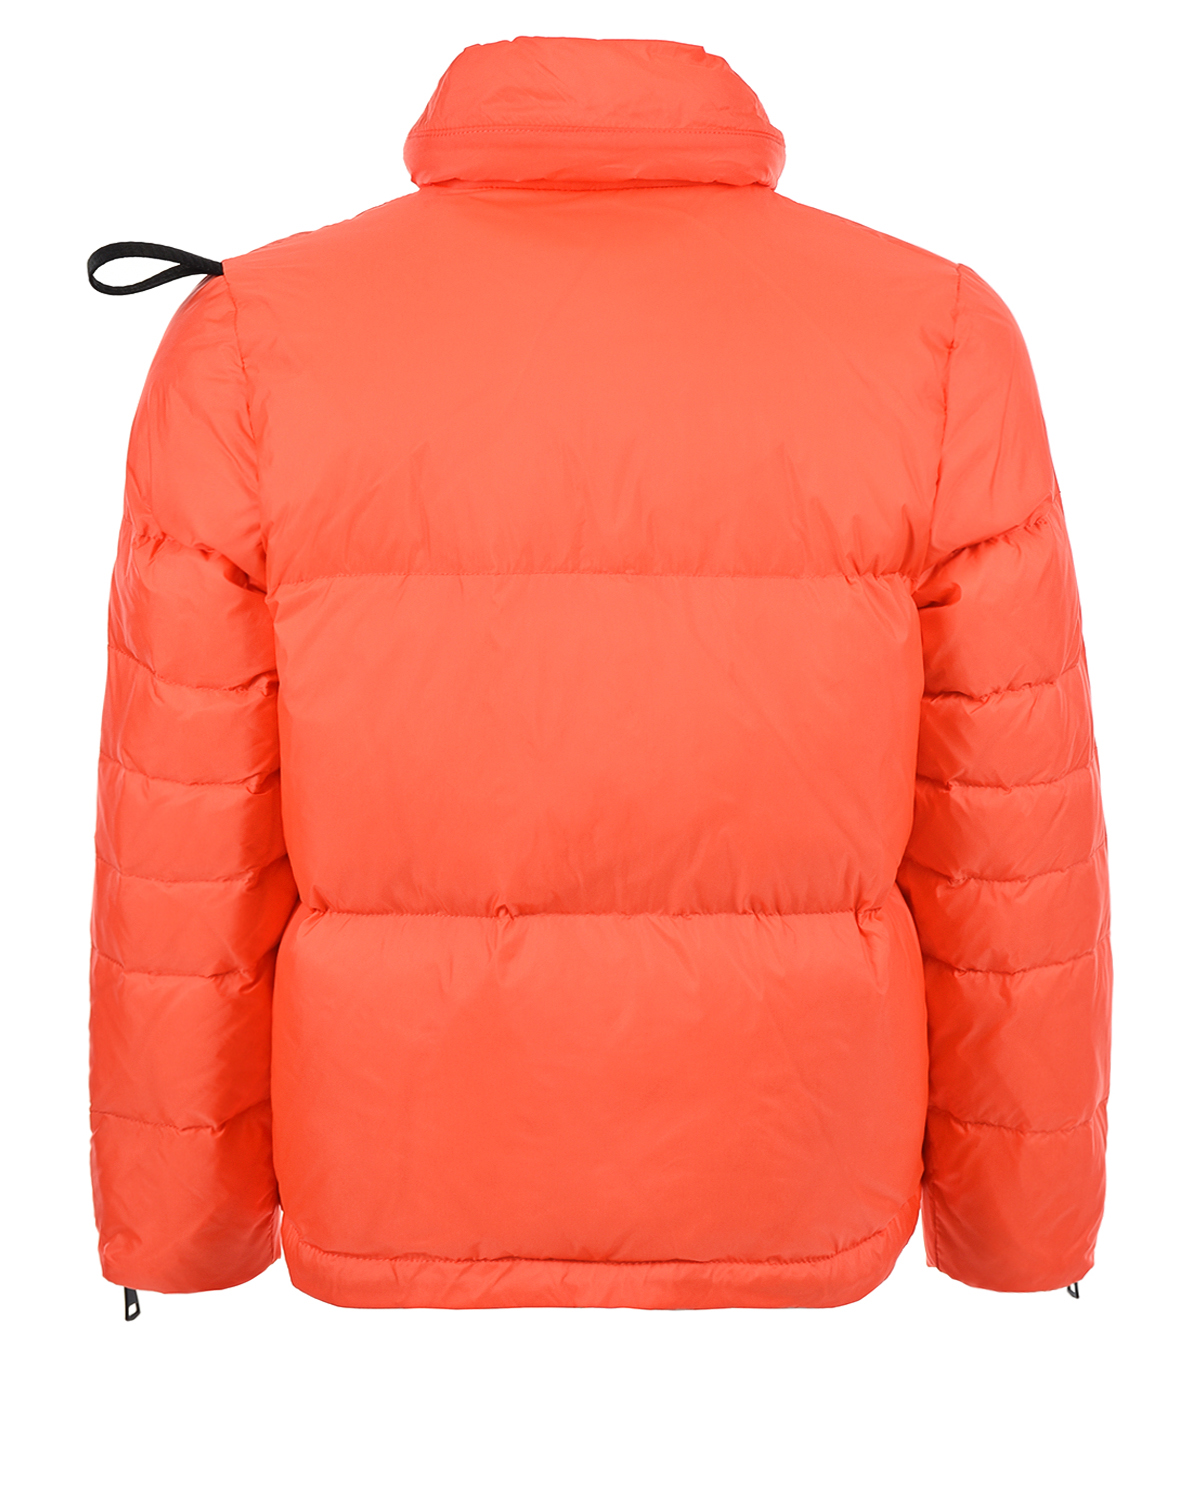 Оранжевая стеганая куртка-пуховик Glox детская, размер 140, цвет оранжевый - фото 2